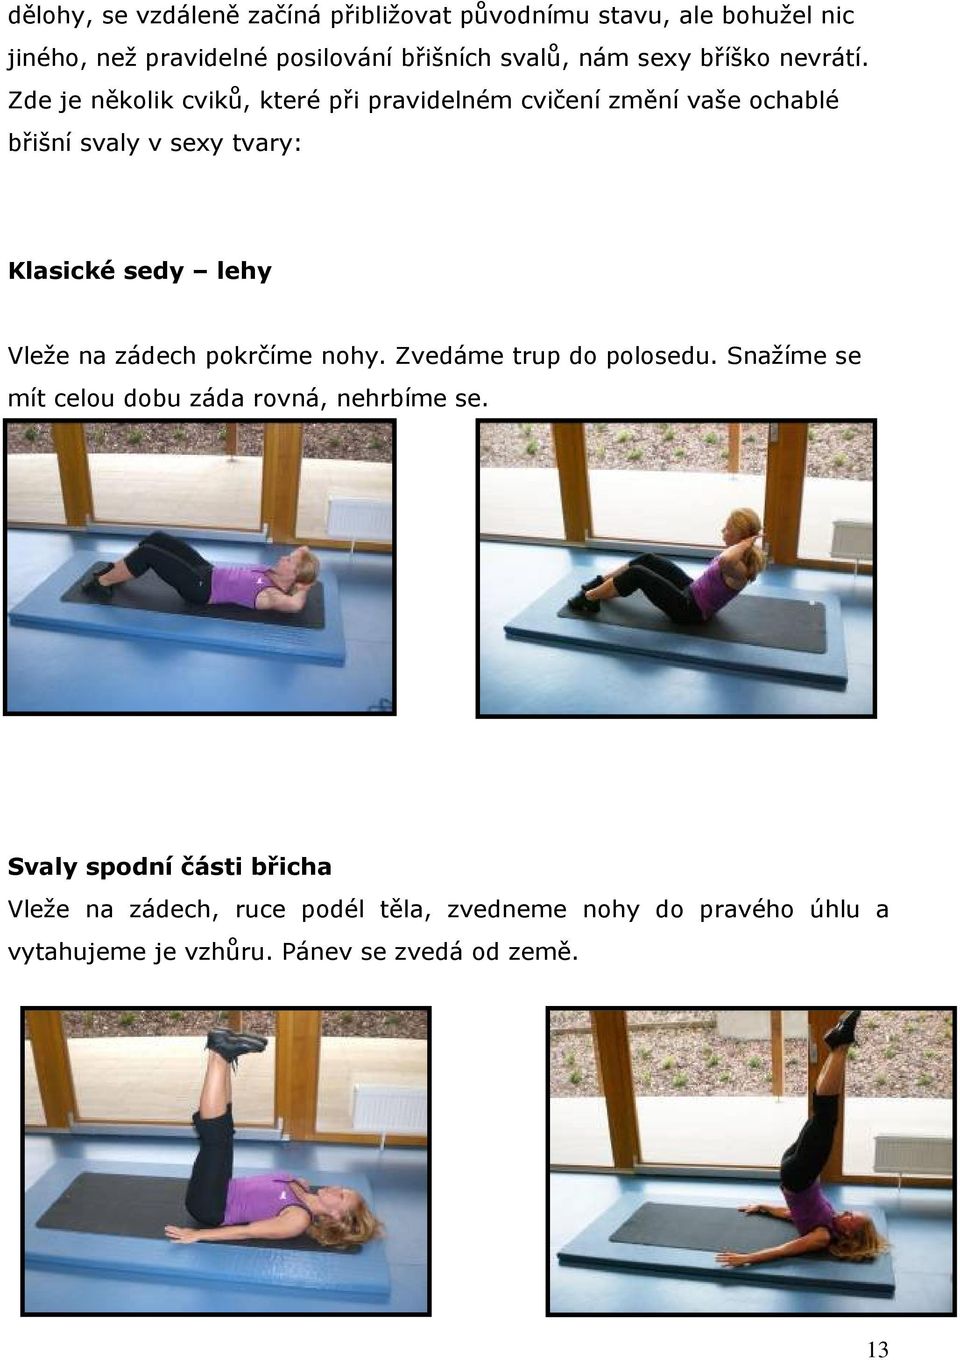 Zde je několik cviků, které při pravidelném cvičení změní vaše ochablé břišní svaly v sexy tvary: Klasické sedy lehy Vleže na